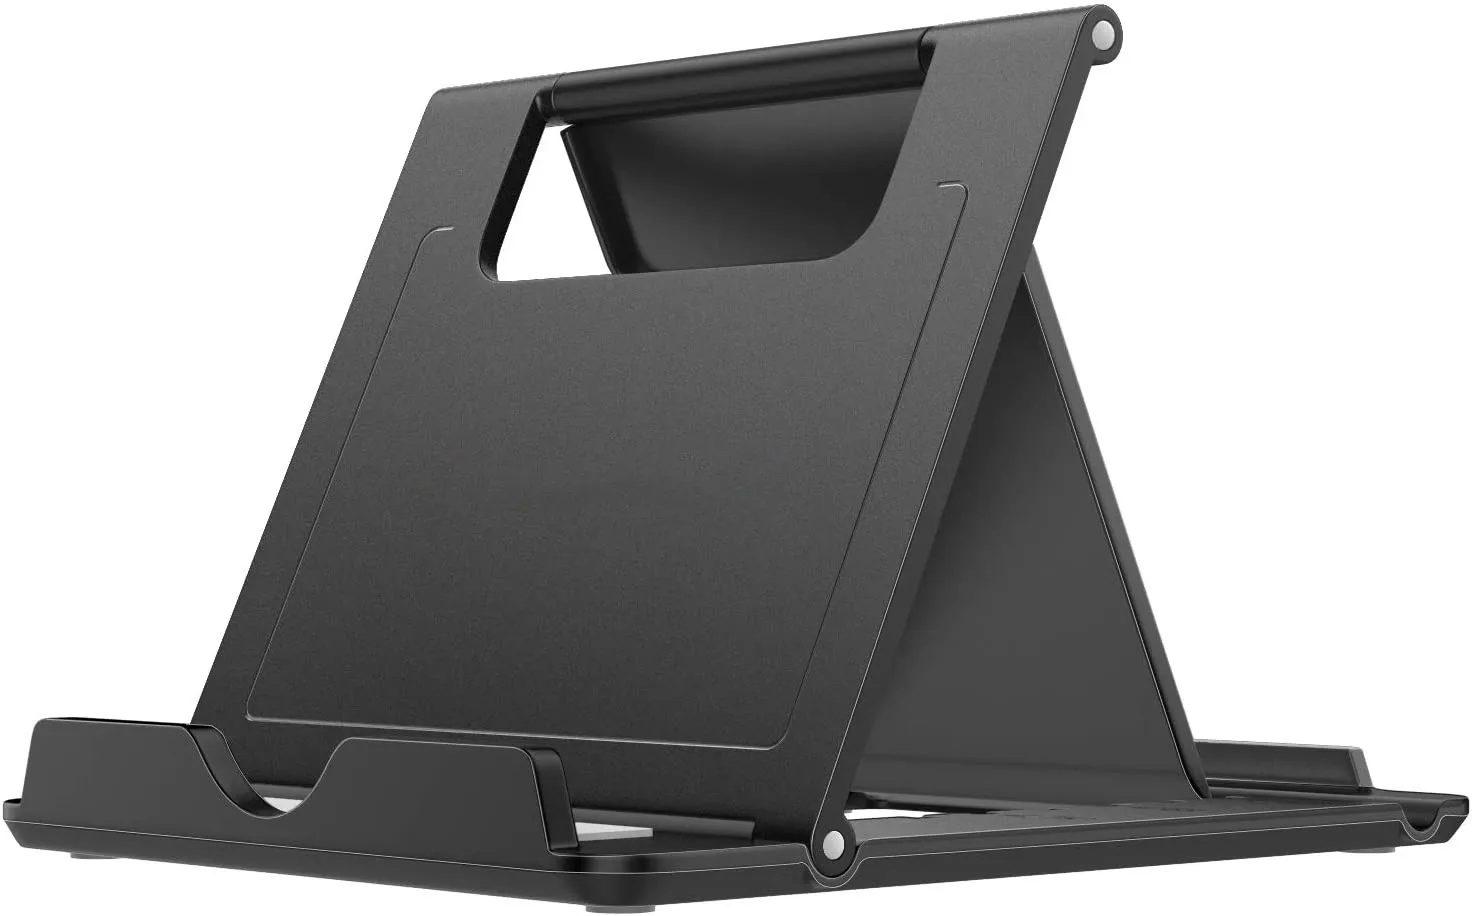 Laptop Stand, Laptop Holder Riser Computer Tablet Stand,Adjustable Aluminum Ergonomic Foldable Portable Desktop Holder Com